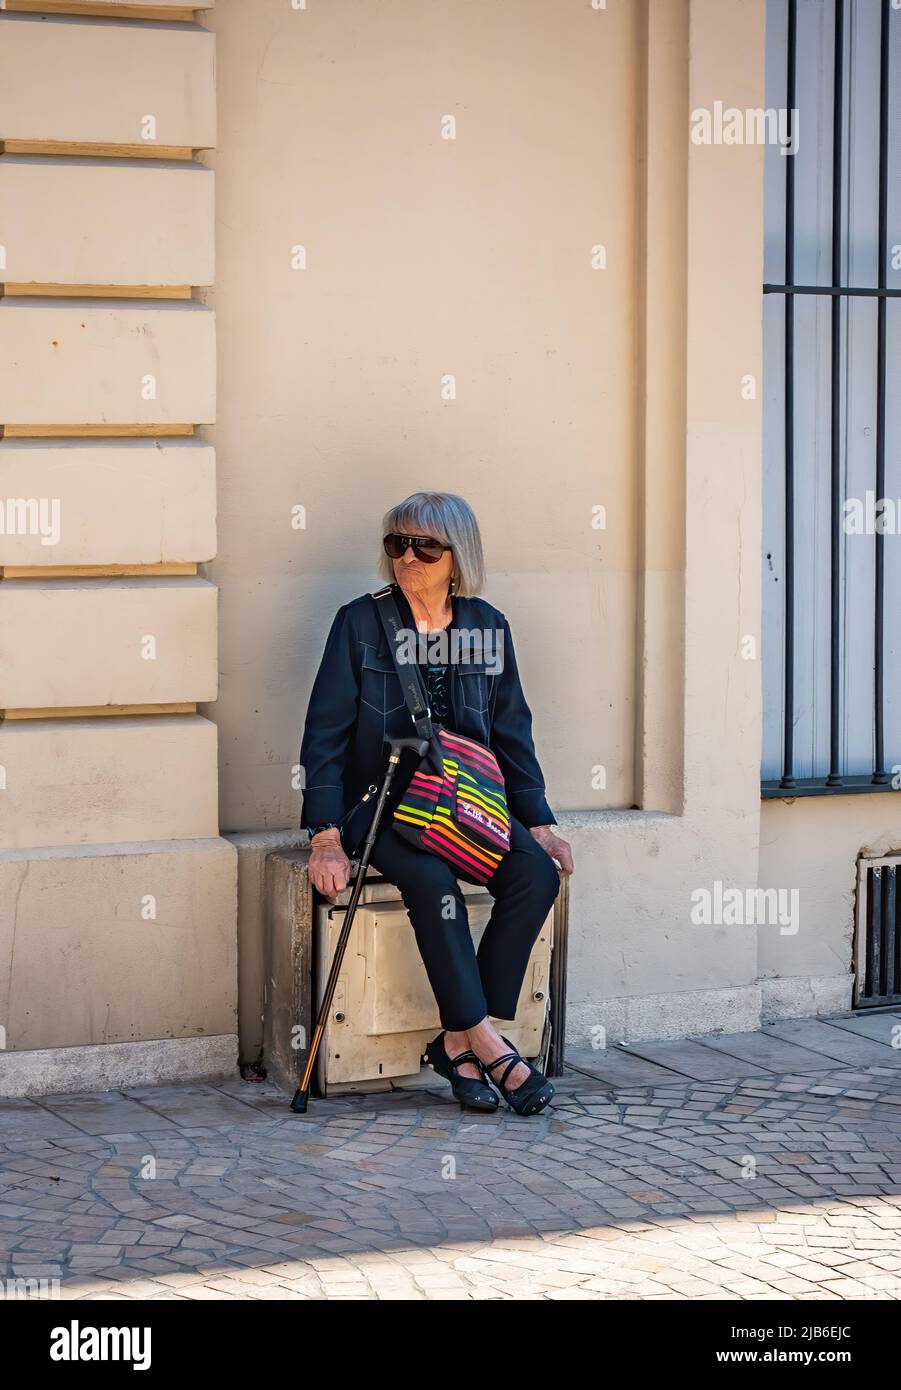 Elderly lady taking a break from walking in Beziers, France. Stock Photo